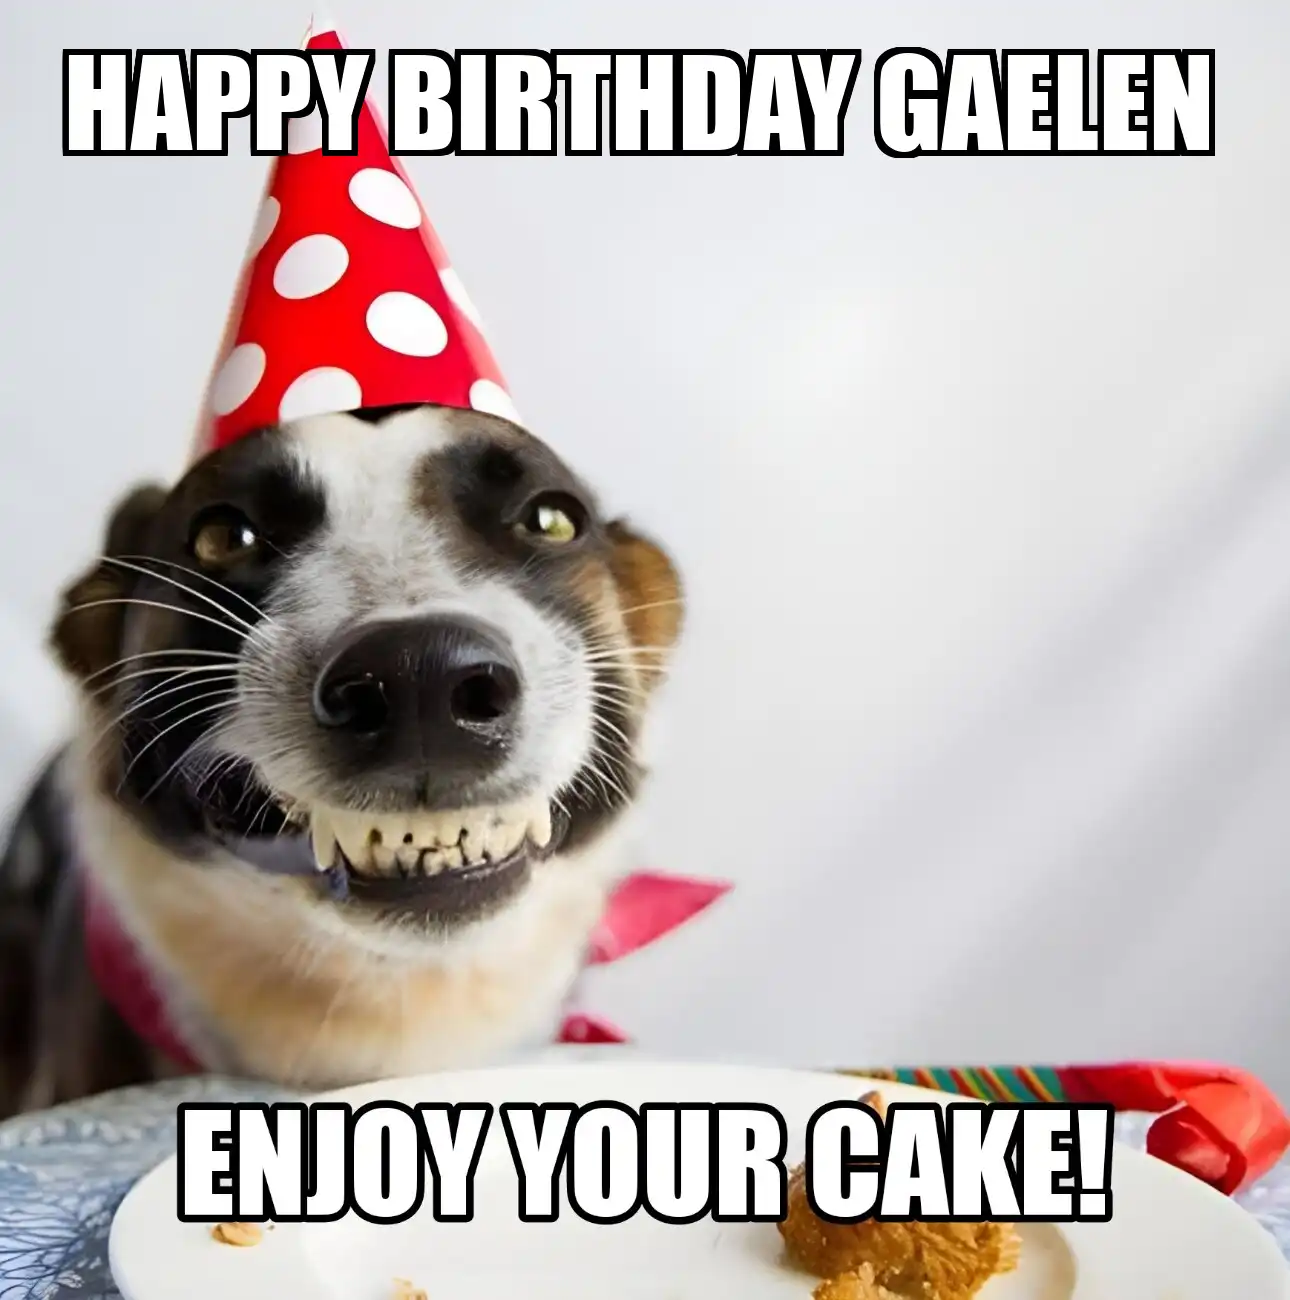 Happy Birthday Gaelen Enjoy Your Cake Dog Meme